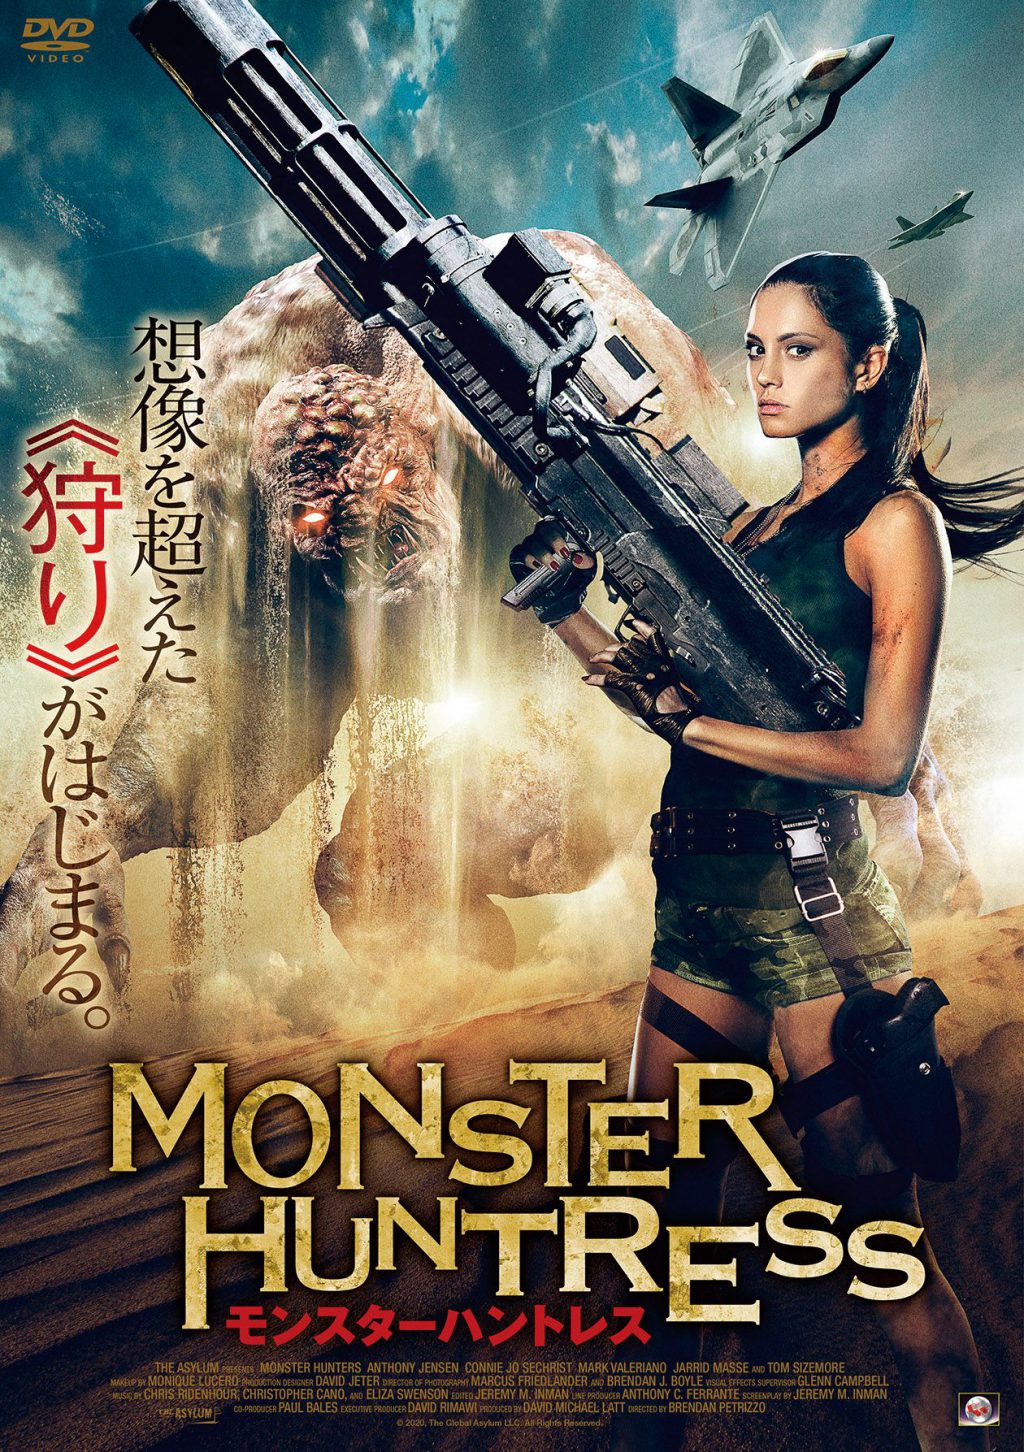 『モンスターハントレス』DVD
発売中
税抜価格：￥4,800
発売：ニューセレクト株式会社